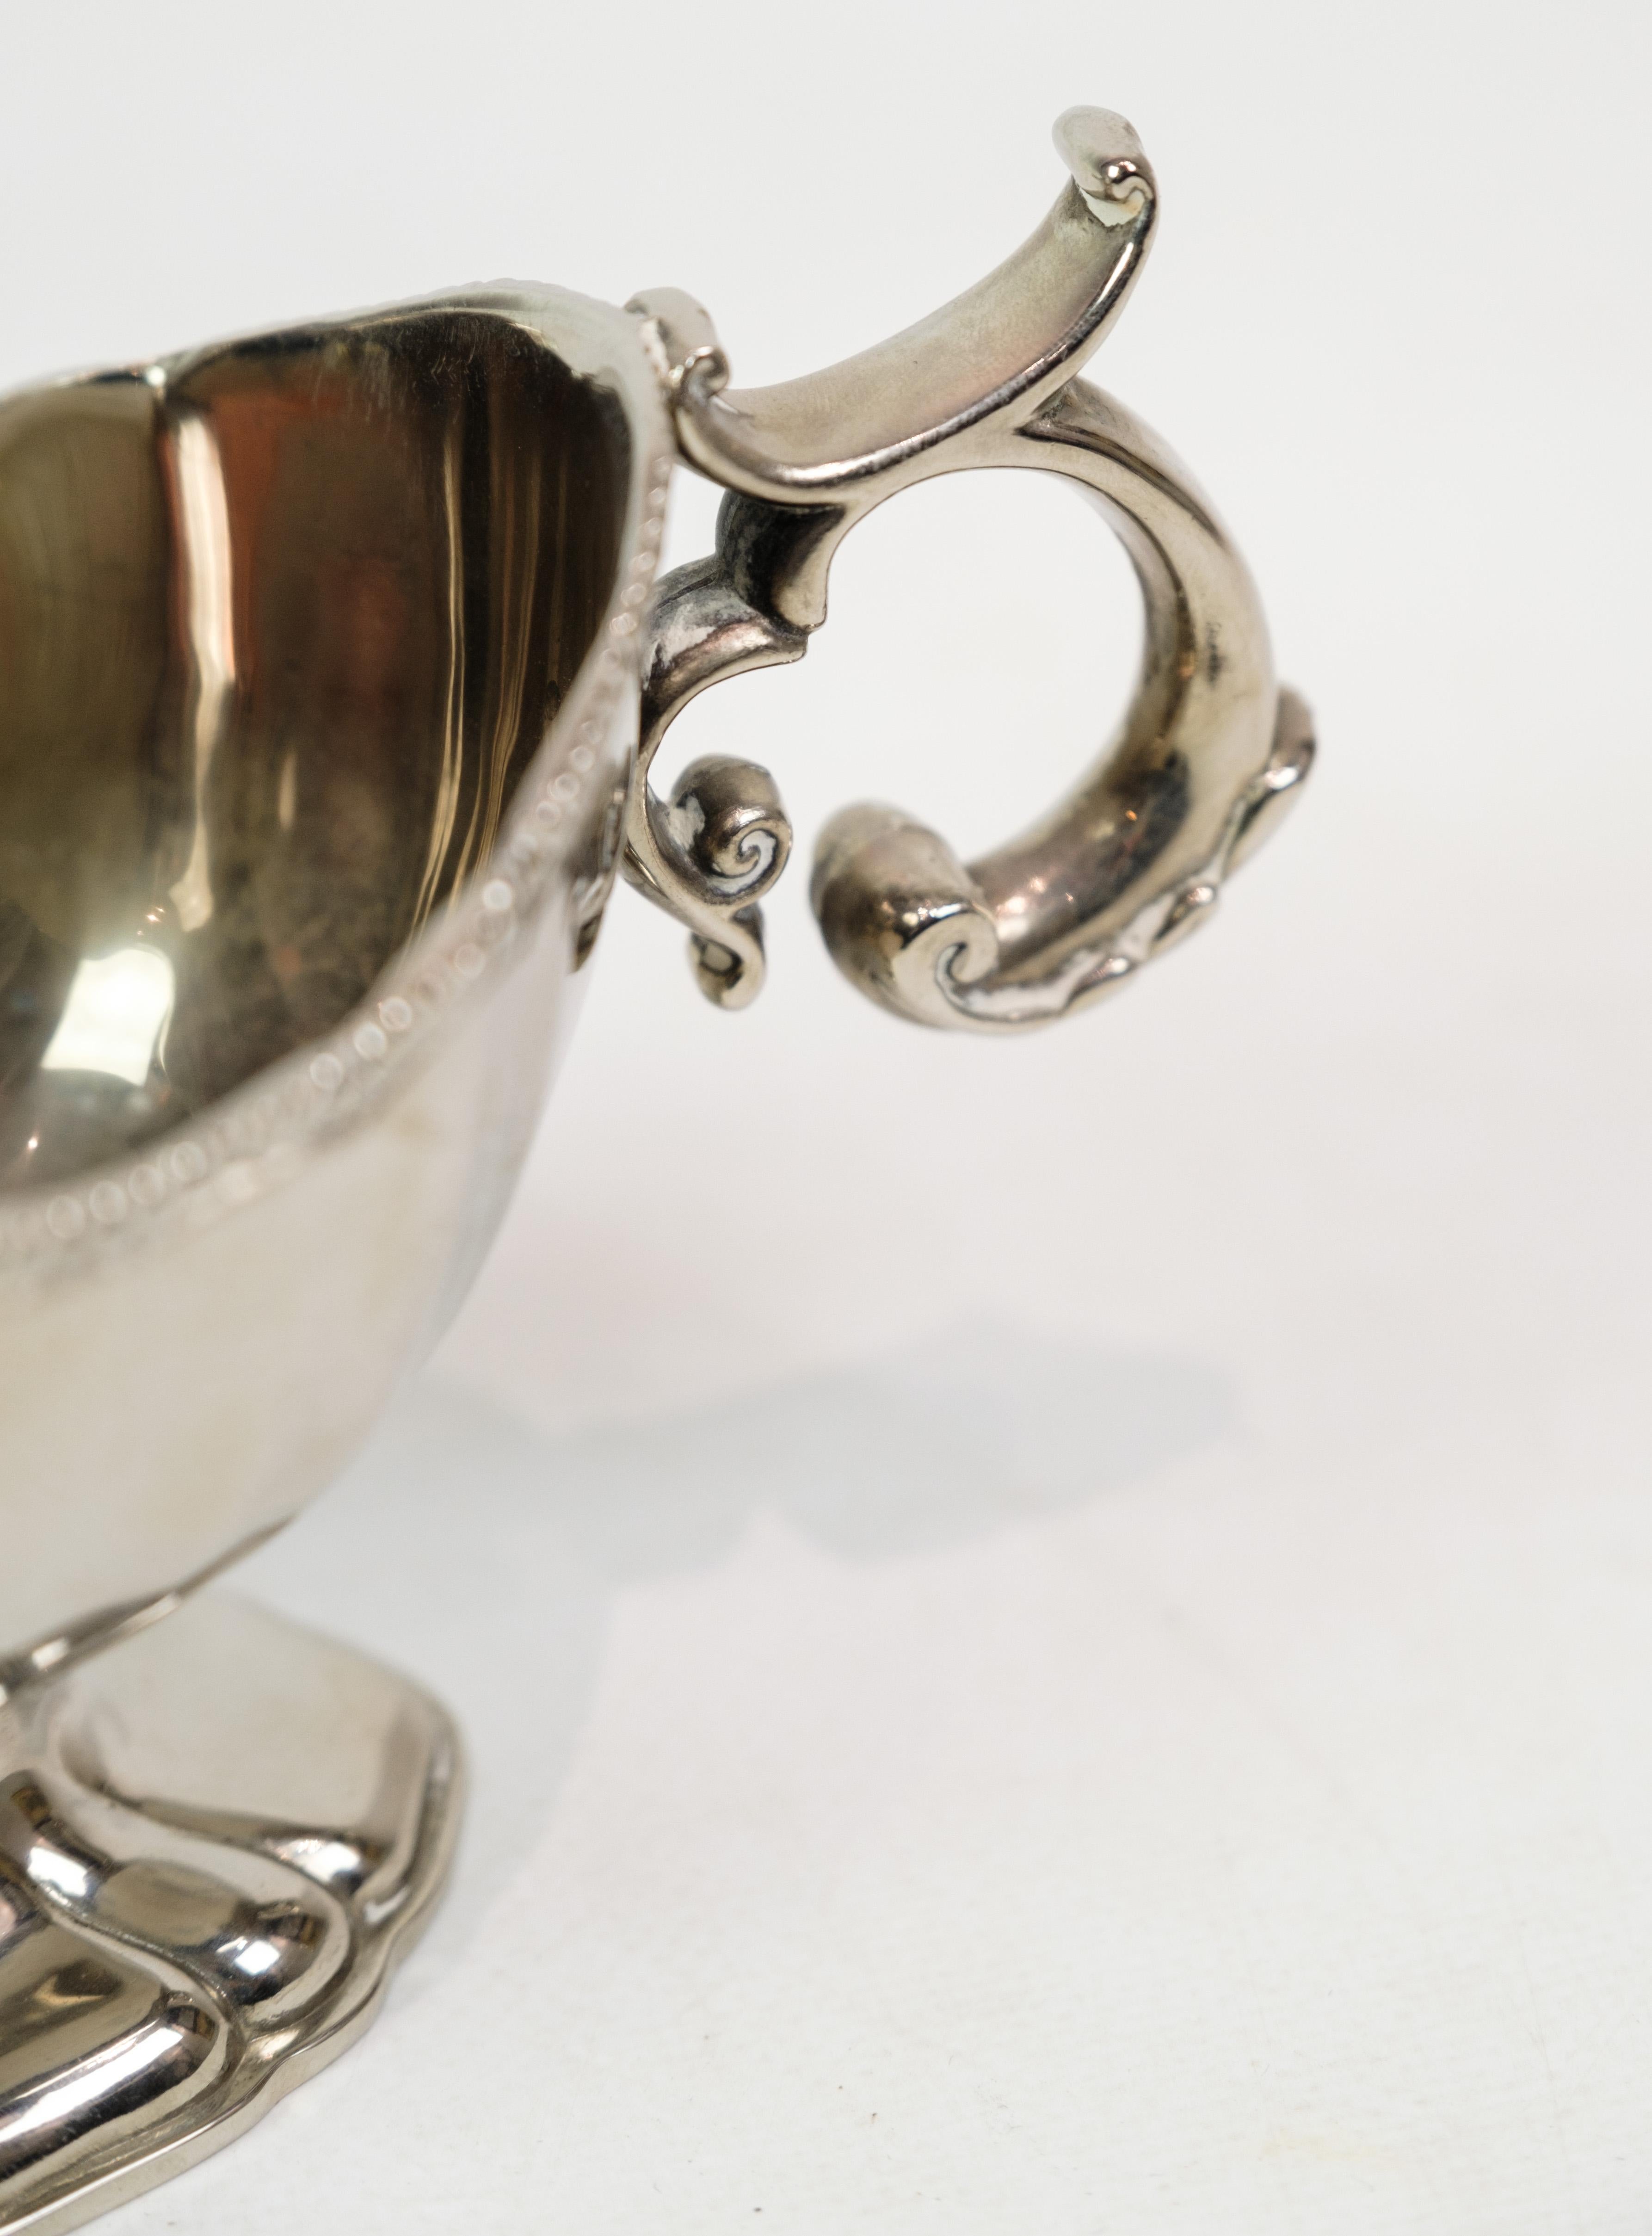 Saucière en métal argenté avec un beau bord perlé datant des années 1930.
H:12 L:20 P:9,5